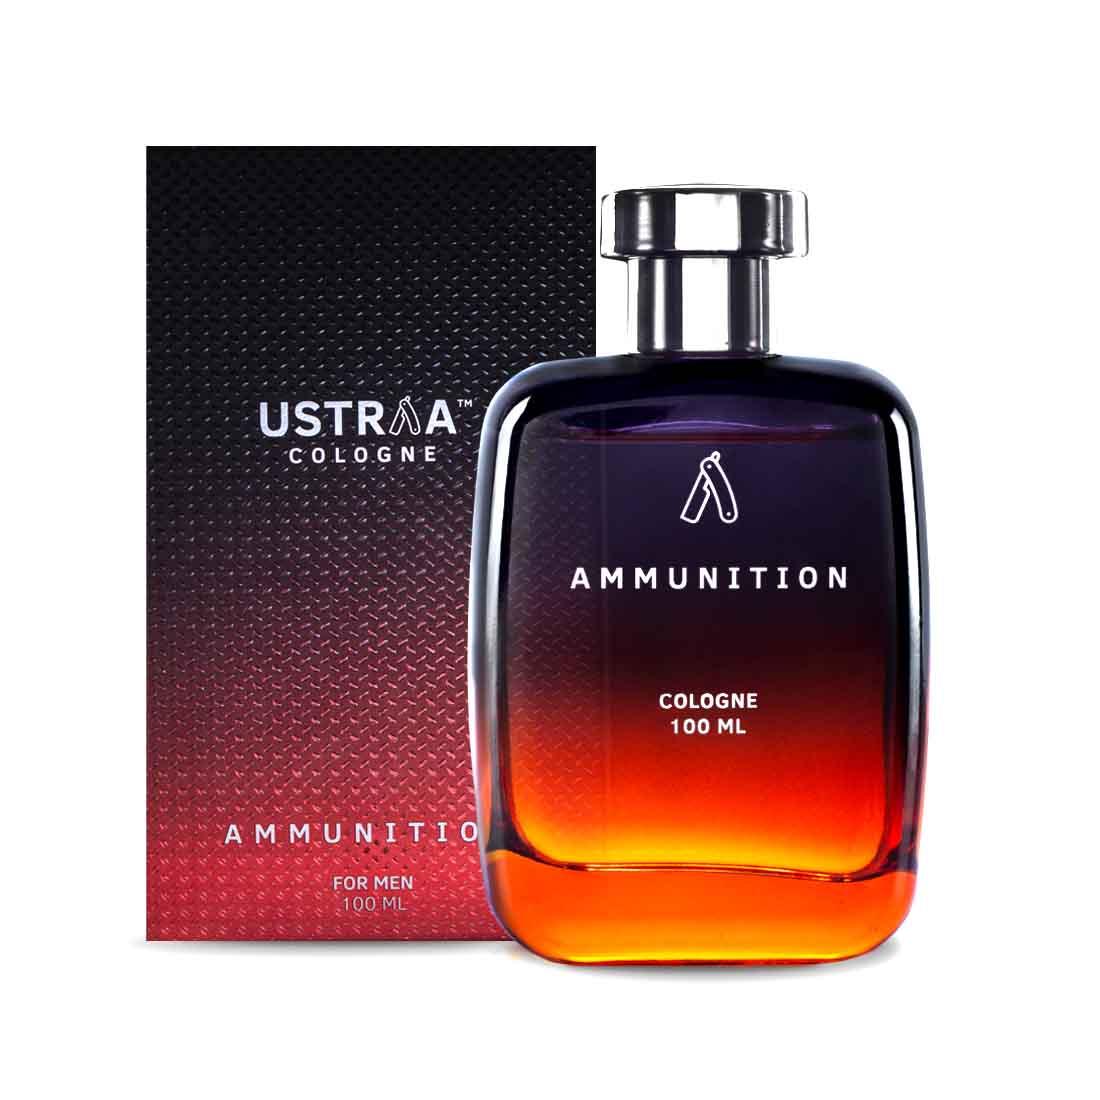 Ammunition Cologne - 100 ml - Perfume for Men